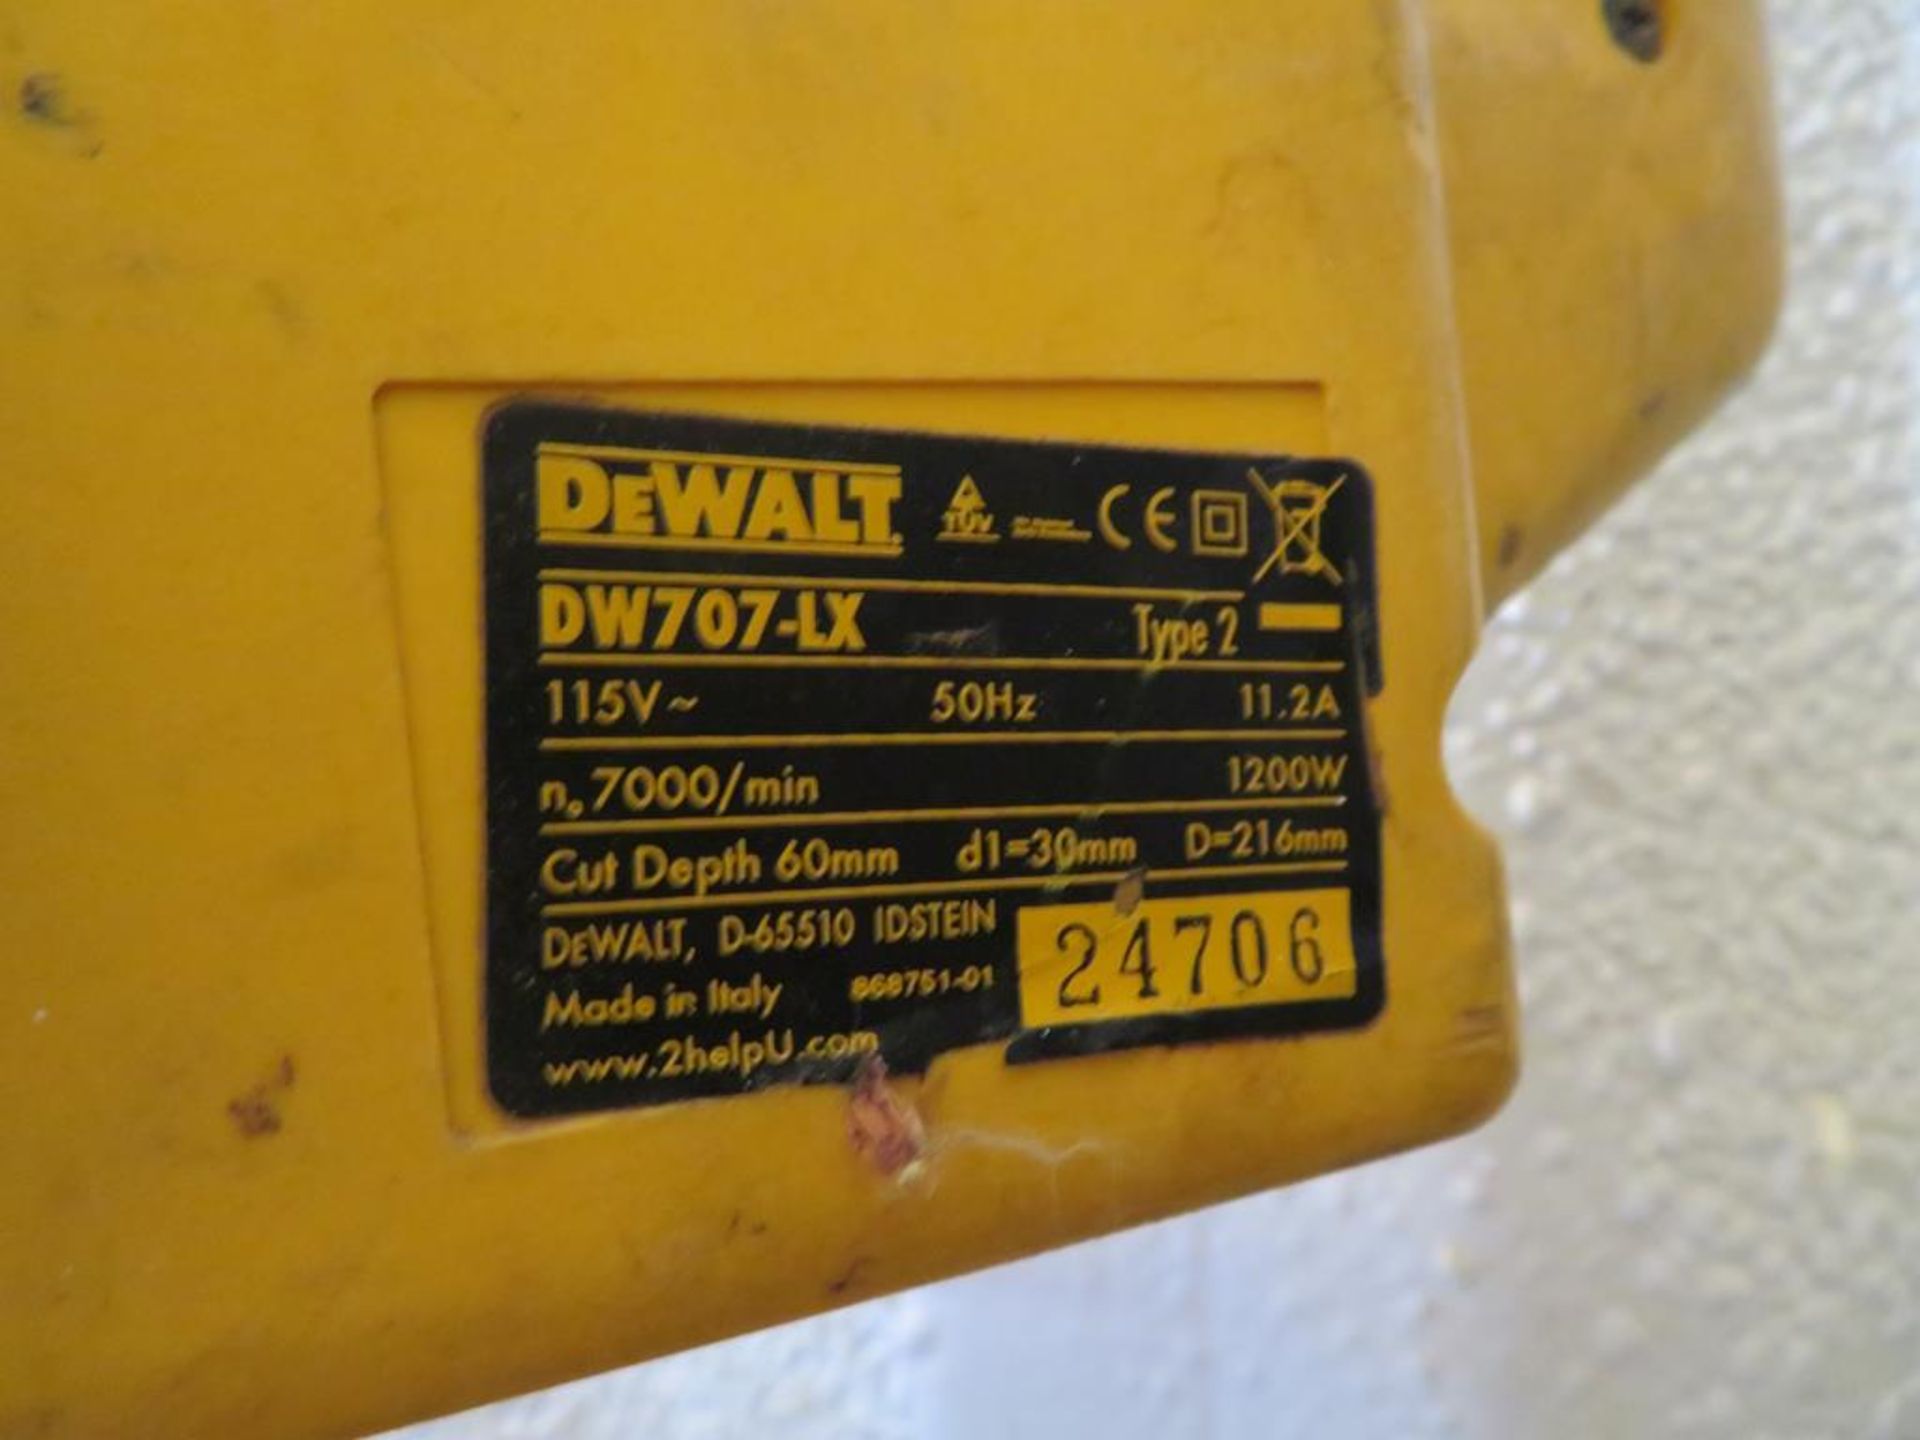 DeWalt DW707-LX Cross Cut Saw - Image 2 of 3